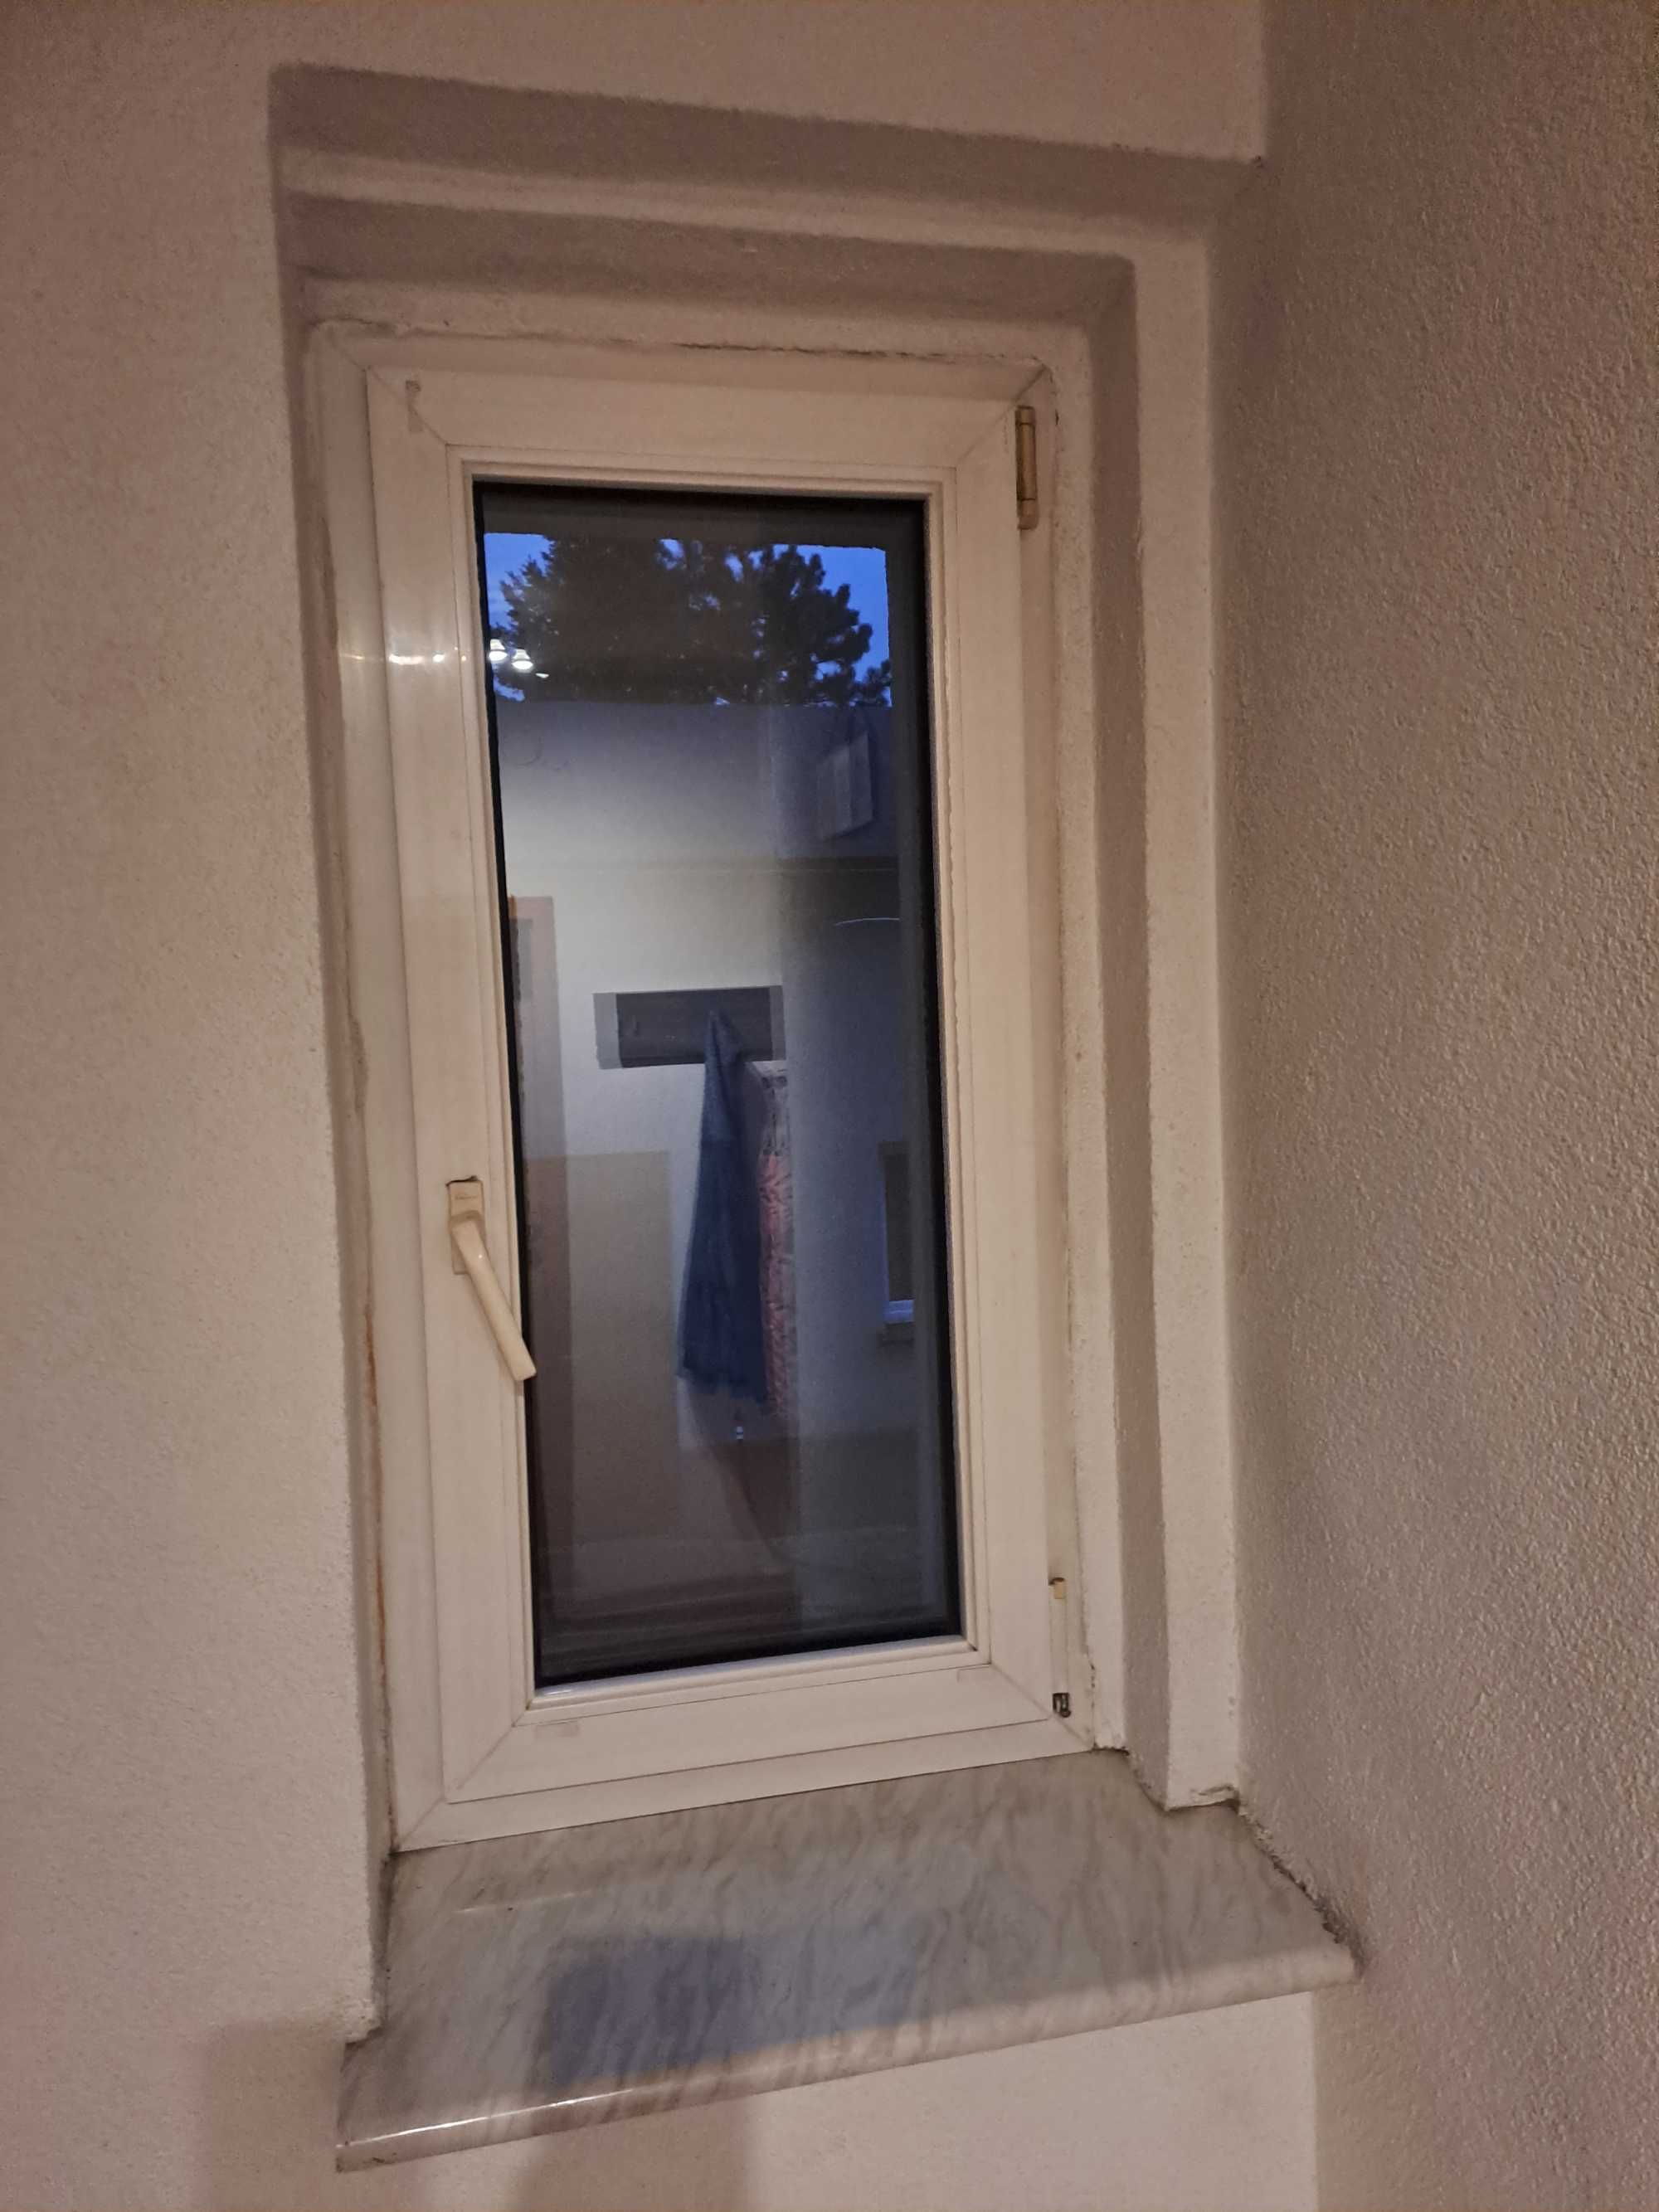 Okna zdemontowane rozne wymiary